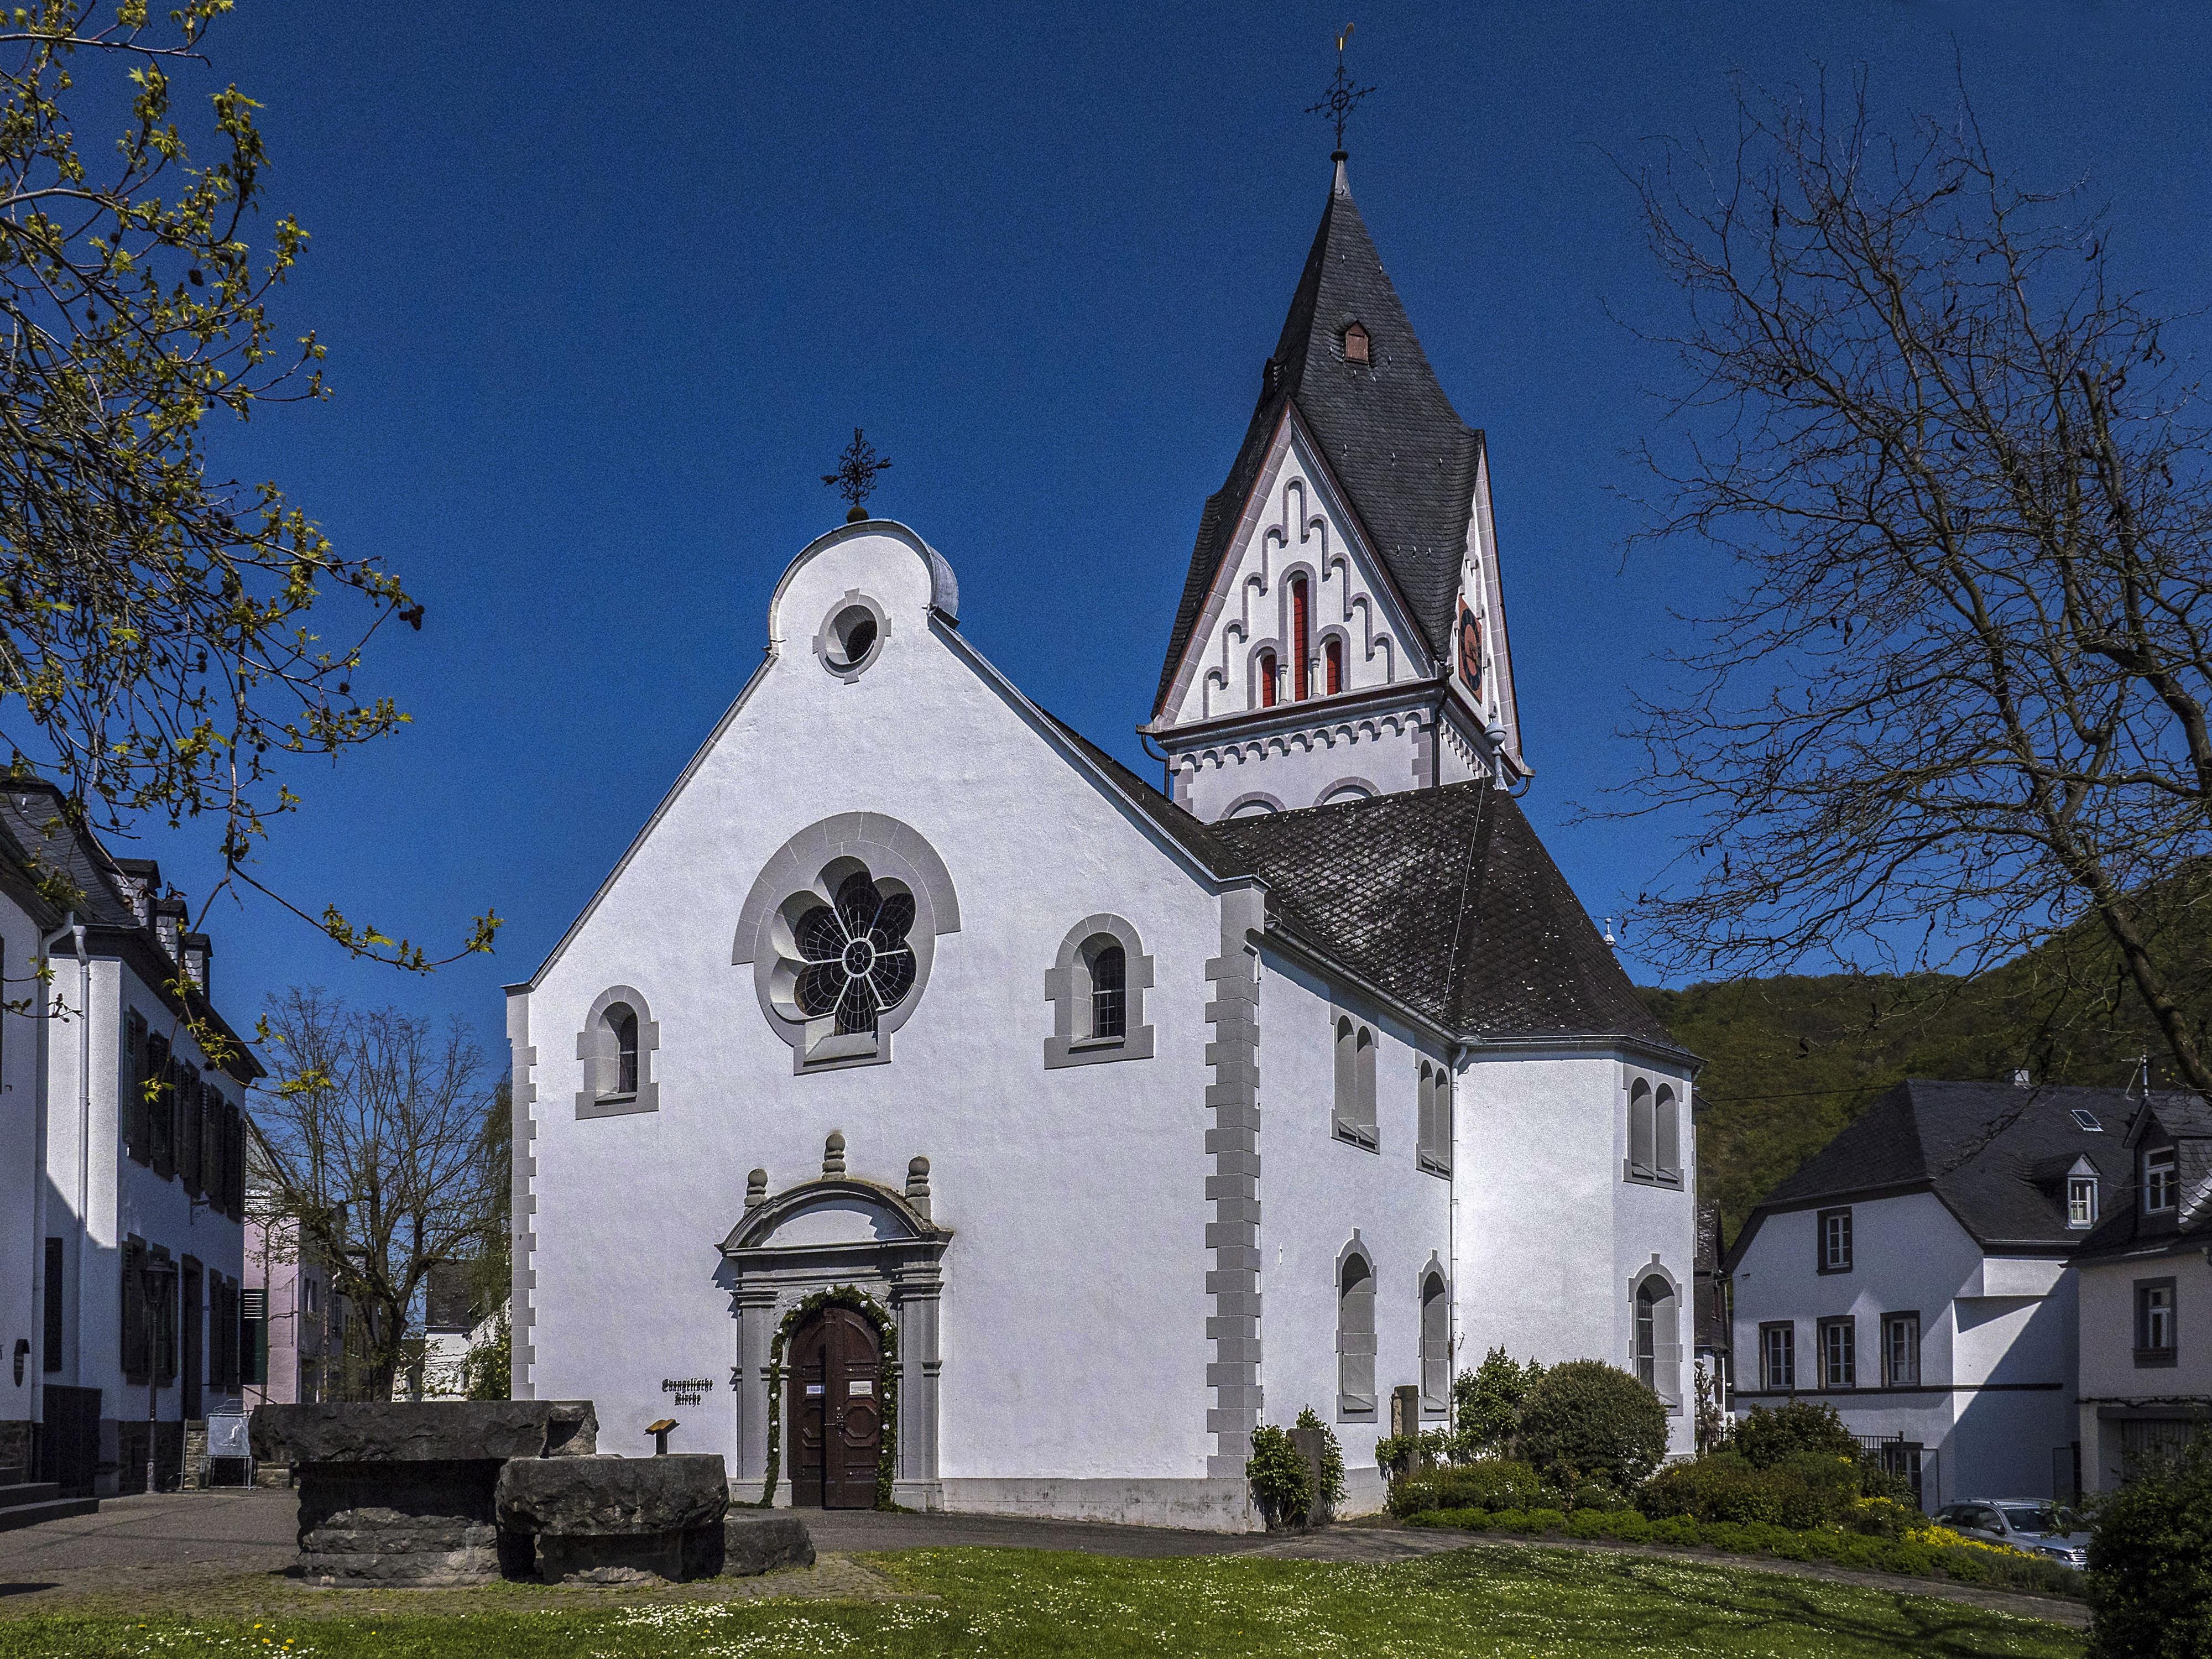 Evangelische Kirchengemeinde Winningen